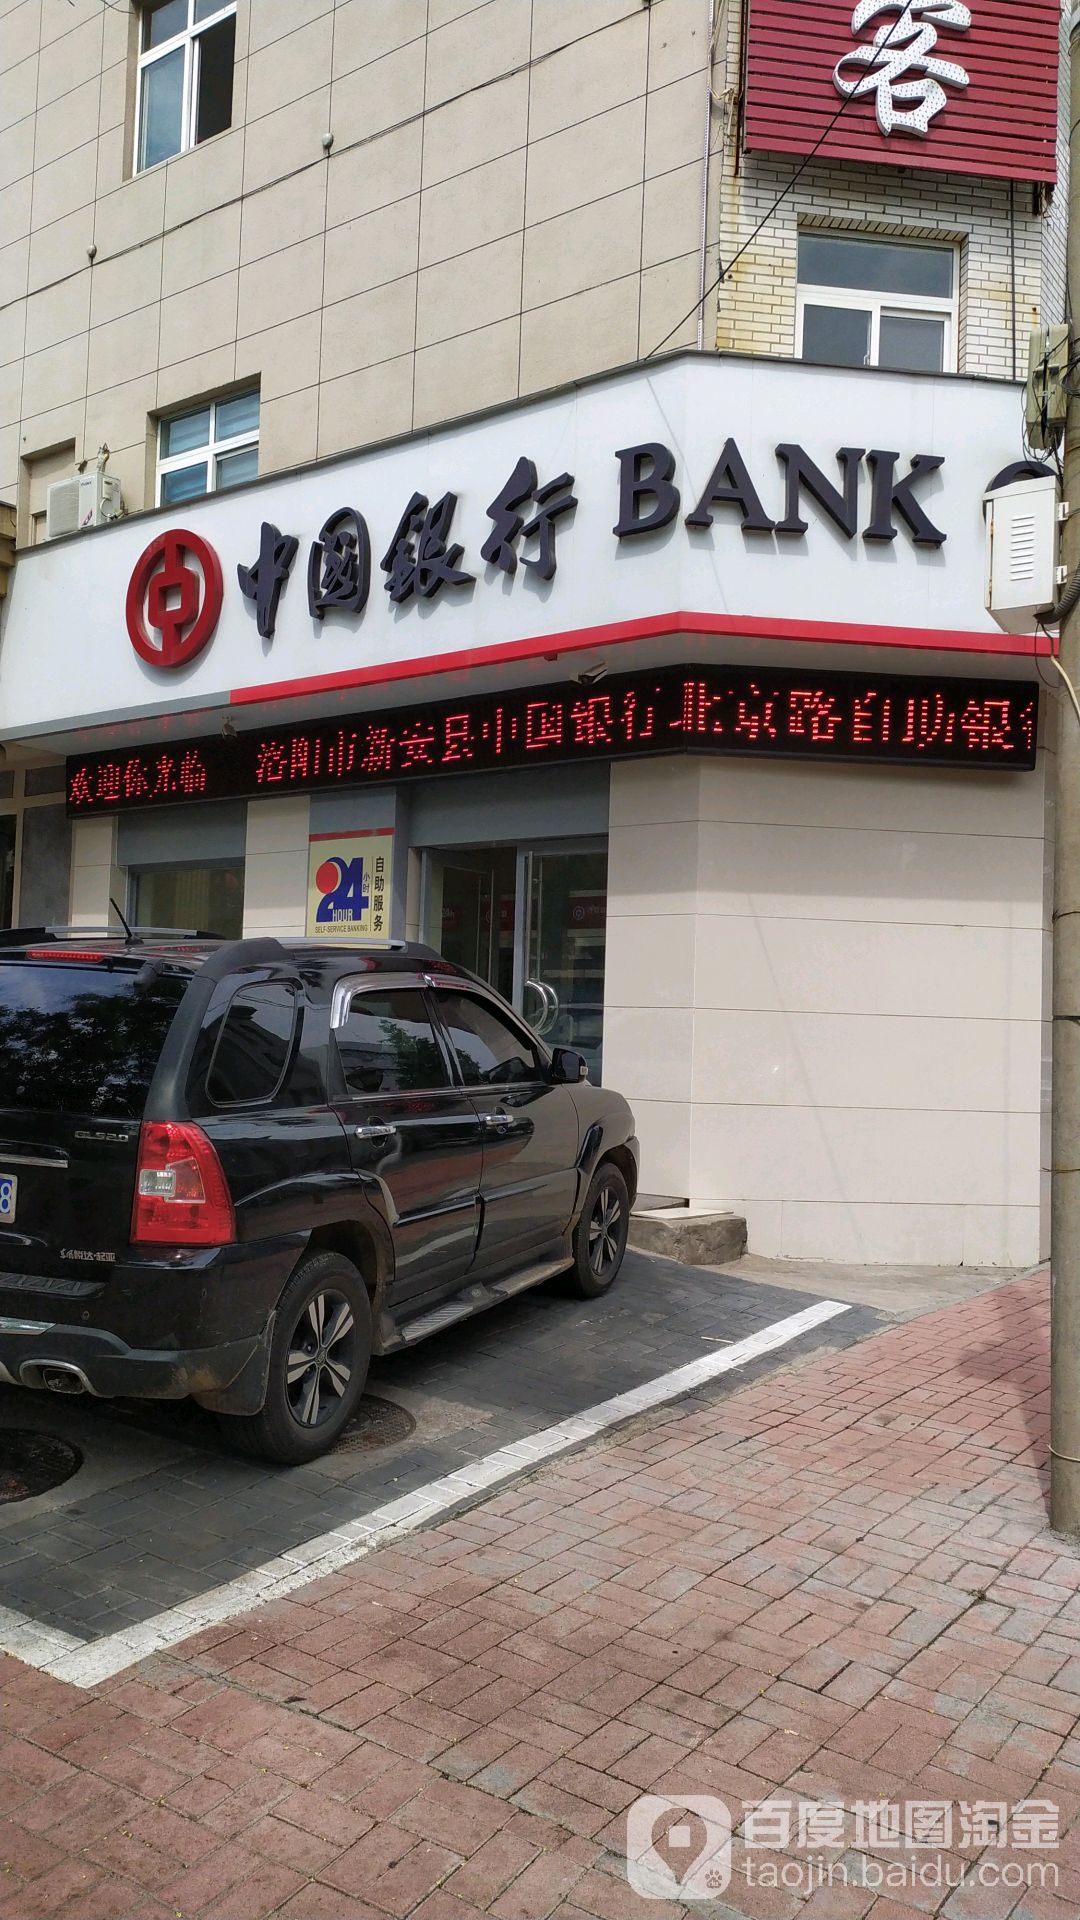 中國銀行24小時自助銀行(民豐路)